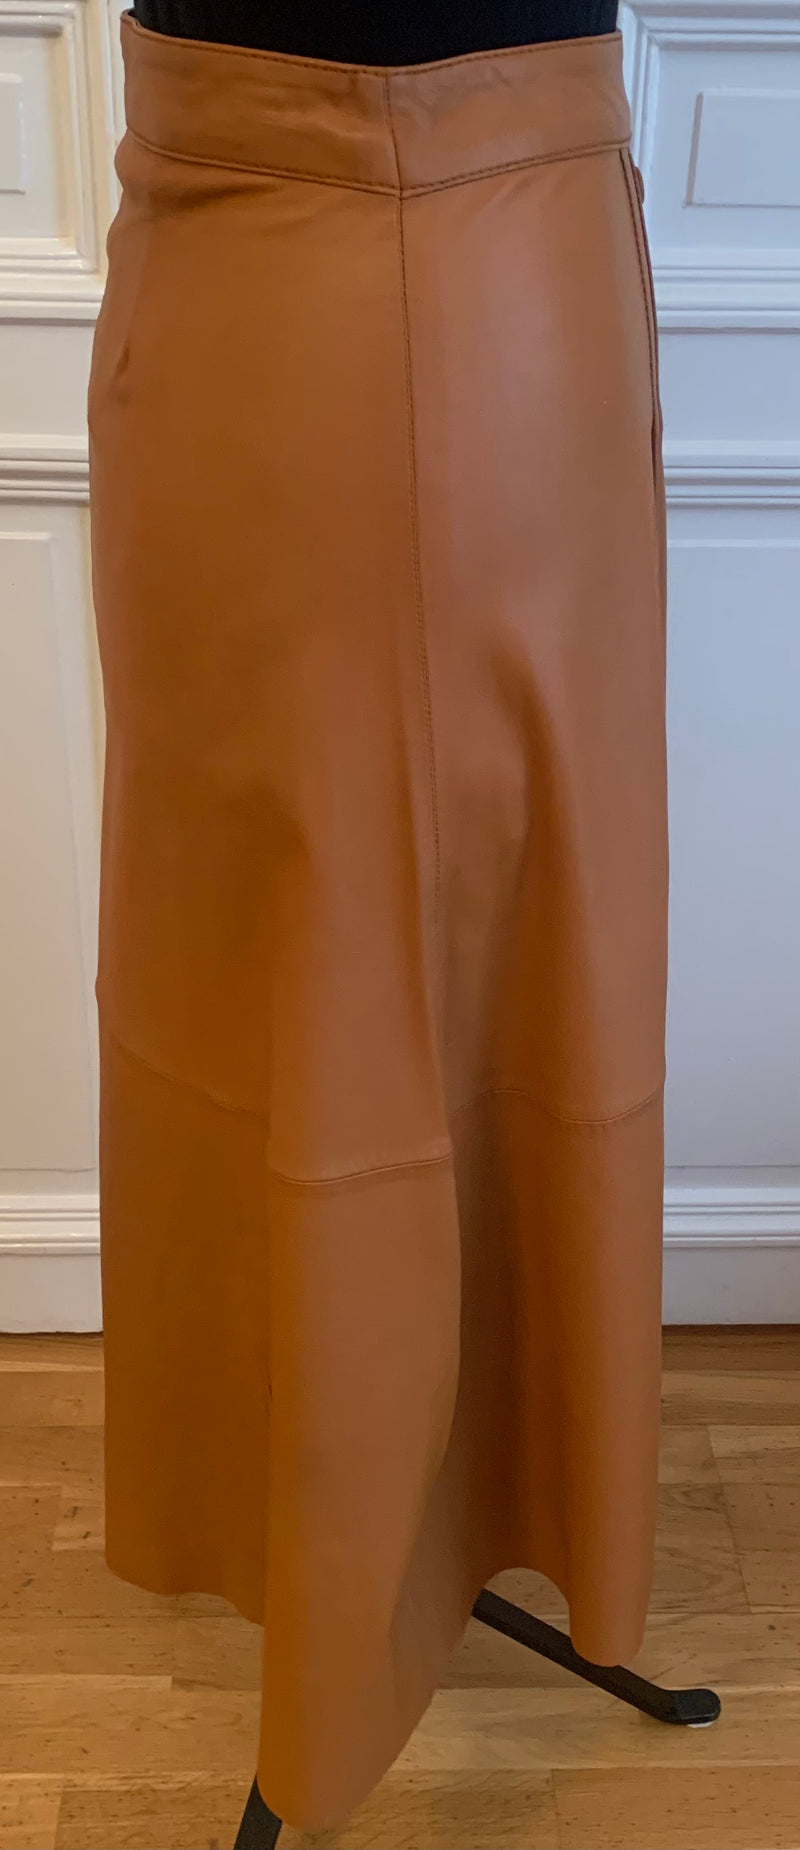 Long skirt in finest lambskin